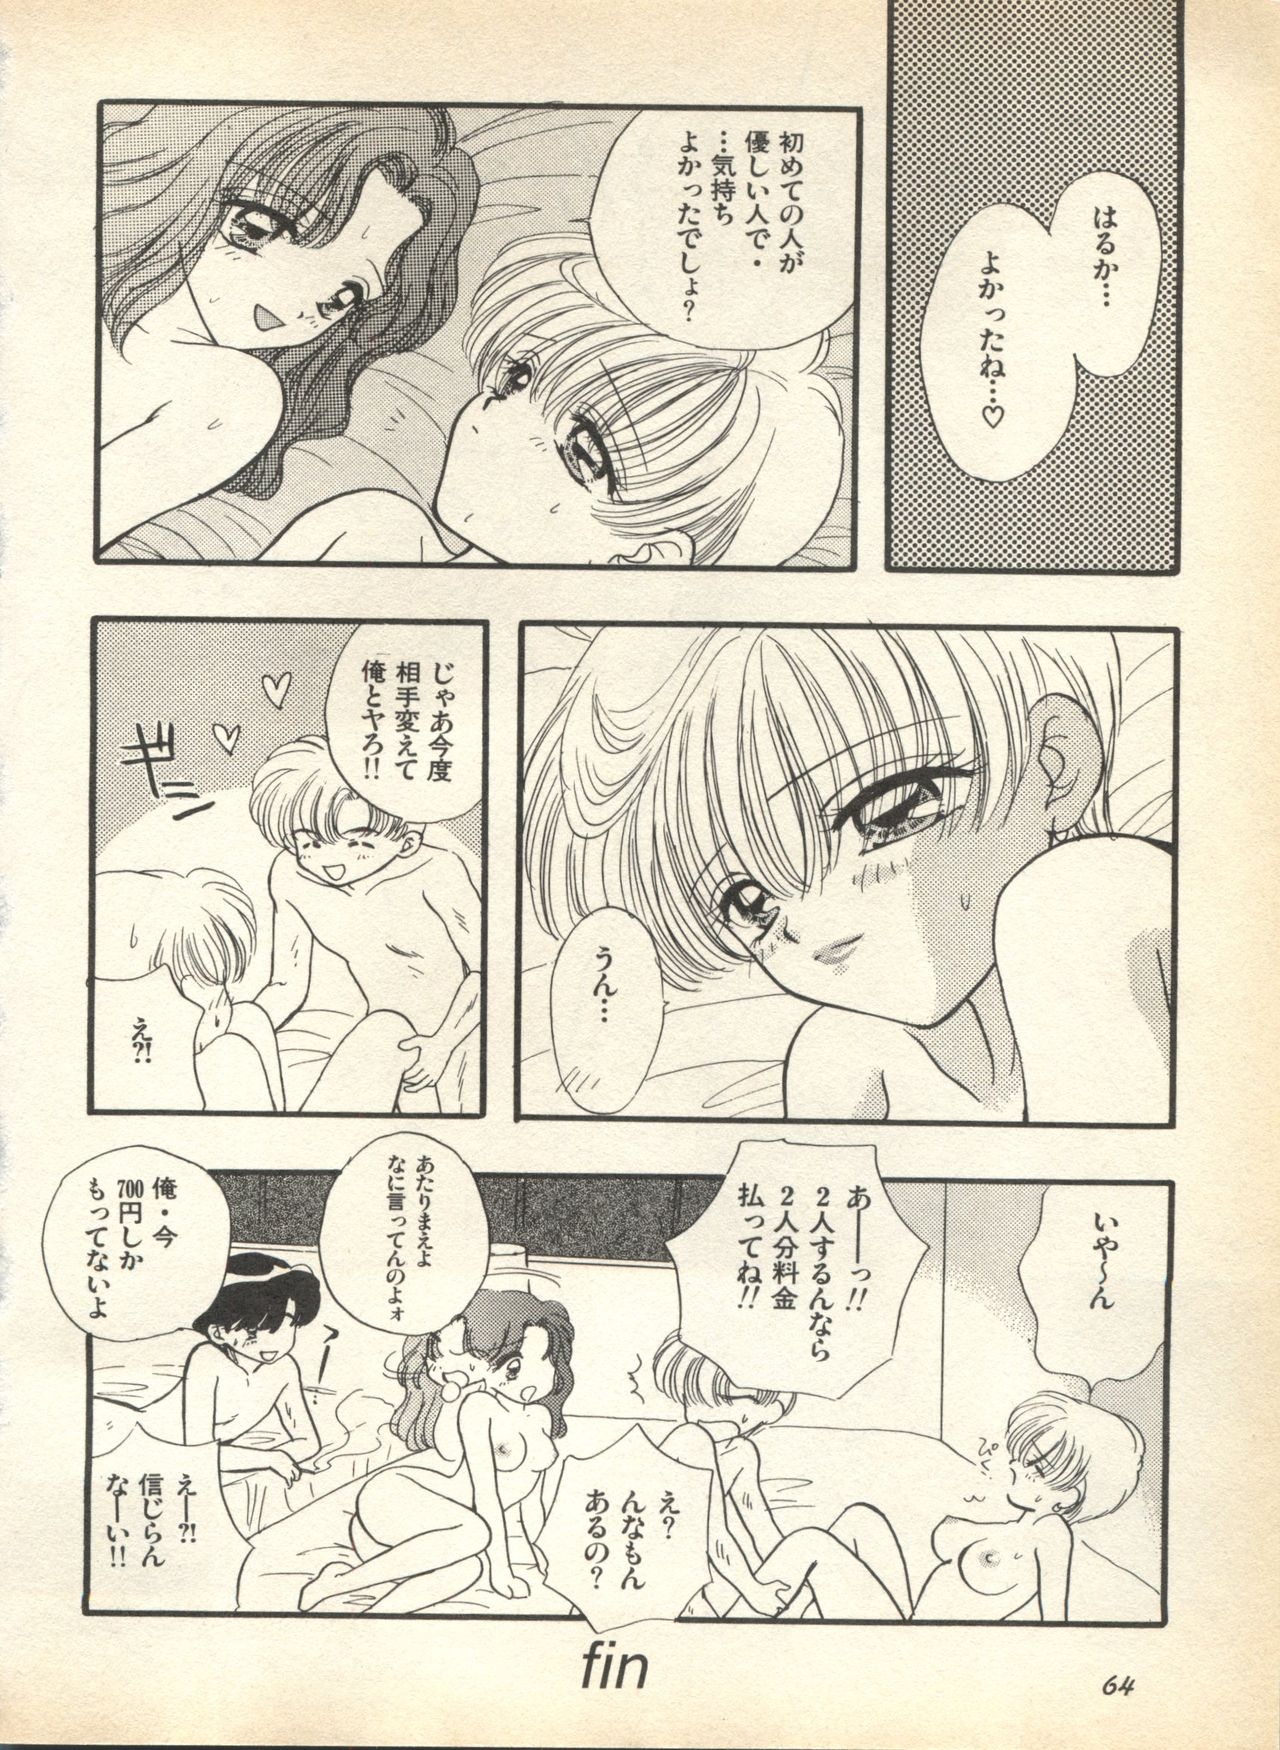 [Anthology] Lunatic Party 7 (Bishoujo Senshi Sailor Moon) 67